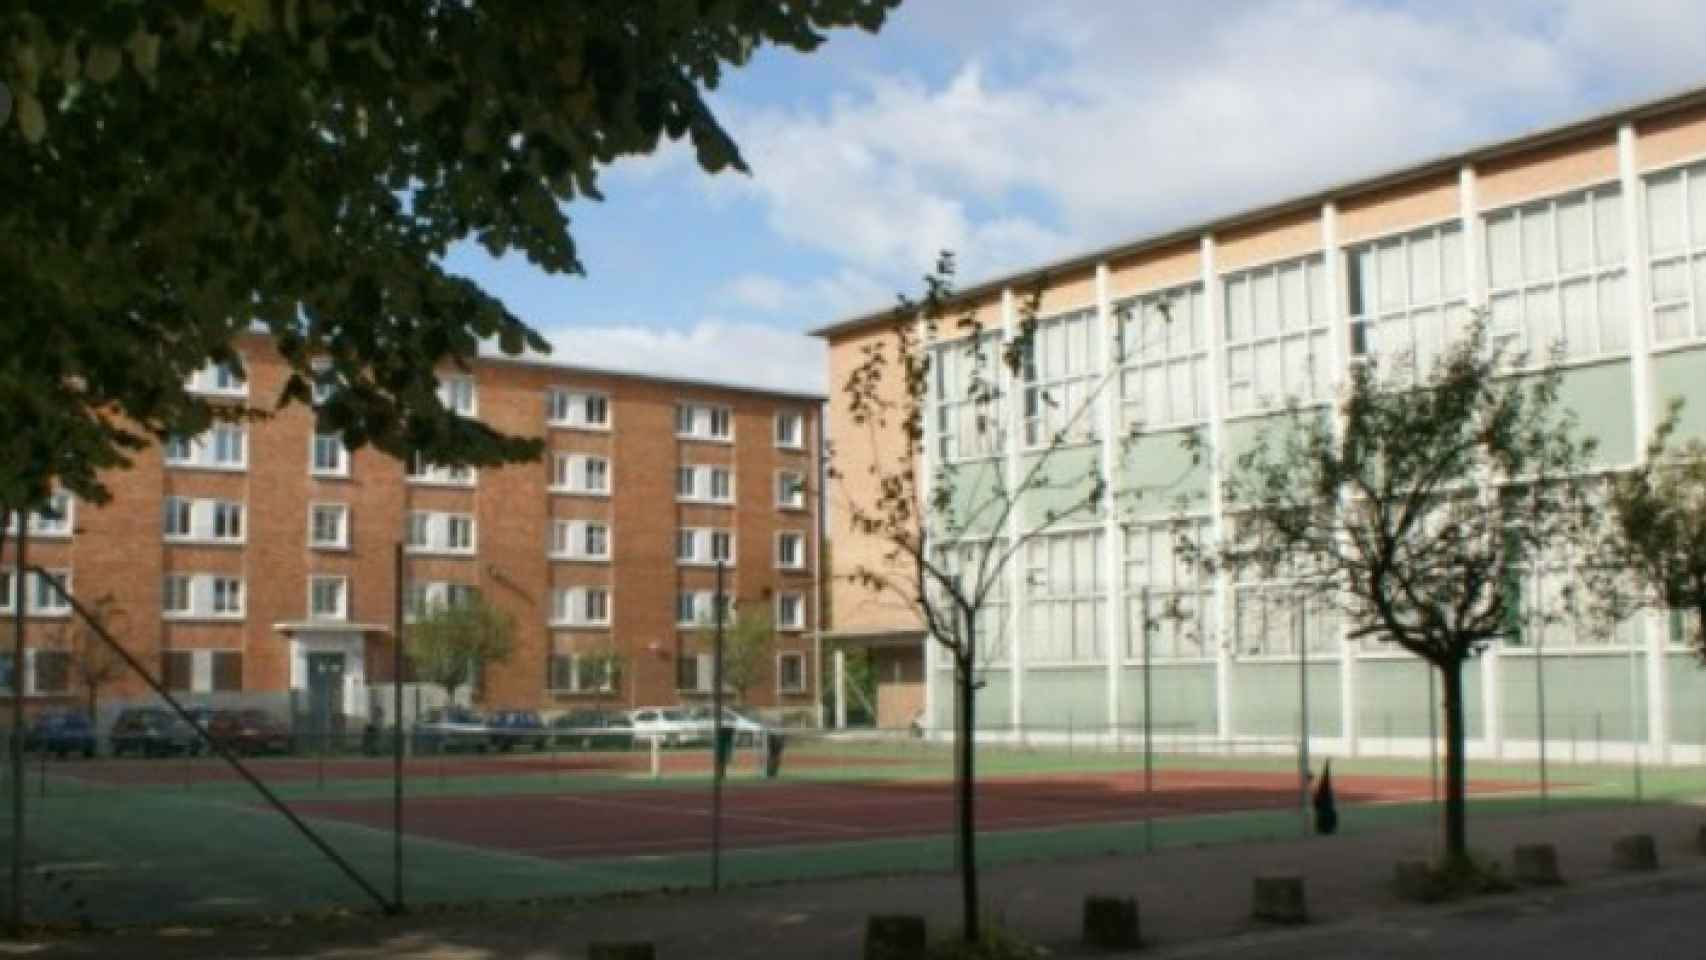 Residencia Albert Châtelet en Lille donde se aloja el universitario desaparecido Leul Alba.